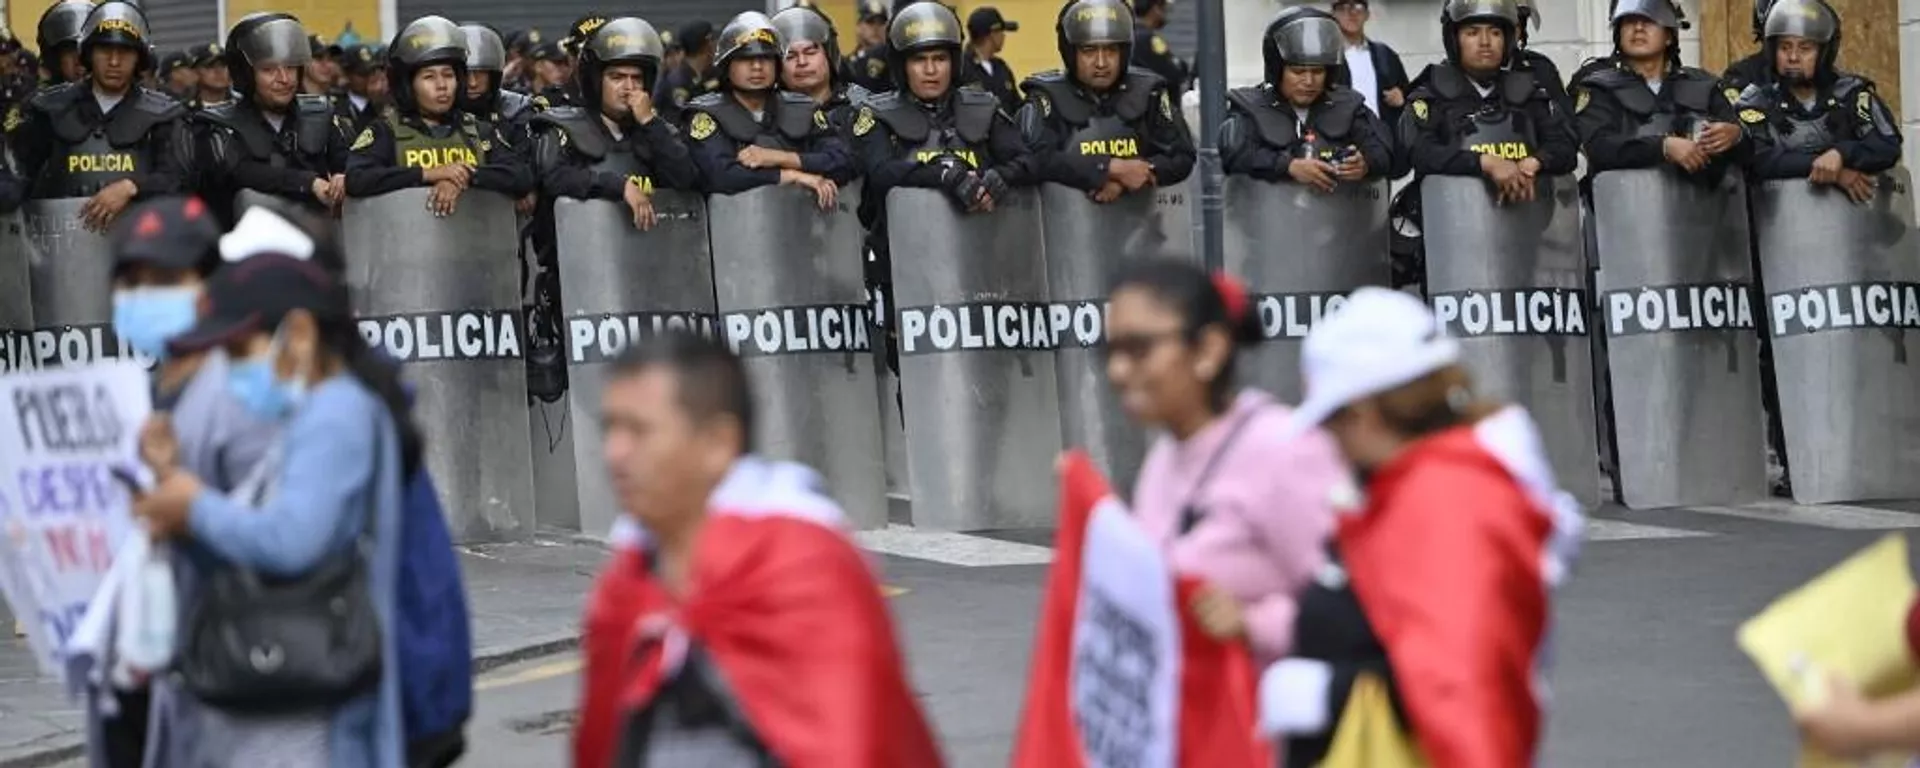 Las protestas en Perú iniciaron desde el pasado 10 de diciembre. - Sputnik Mundo, 1920, 15.12.2022